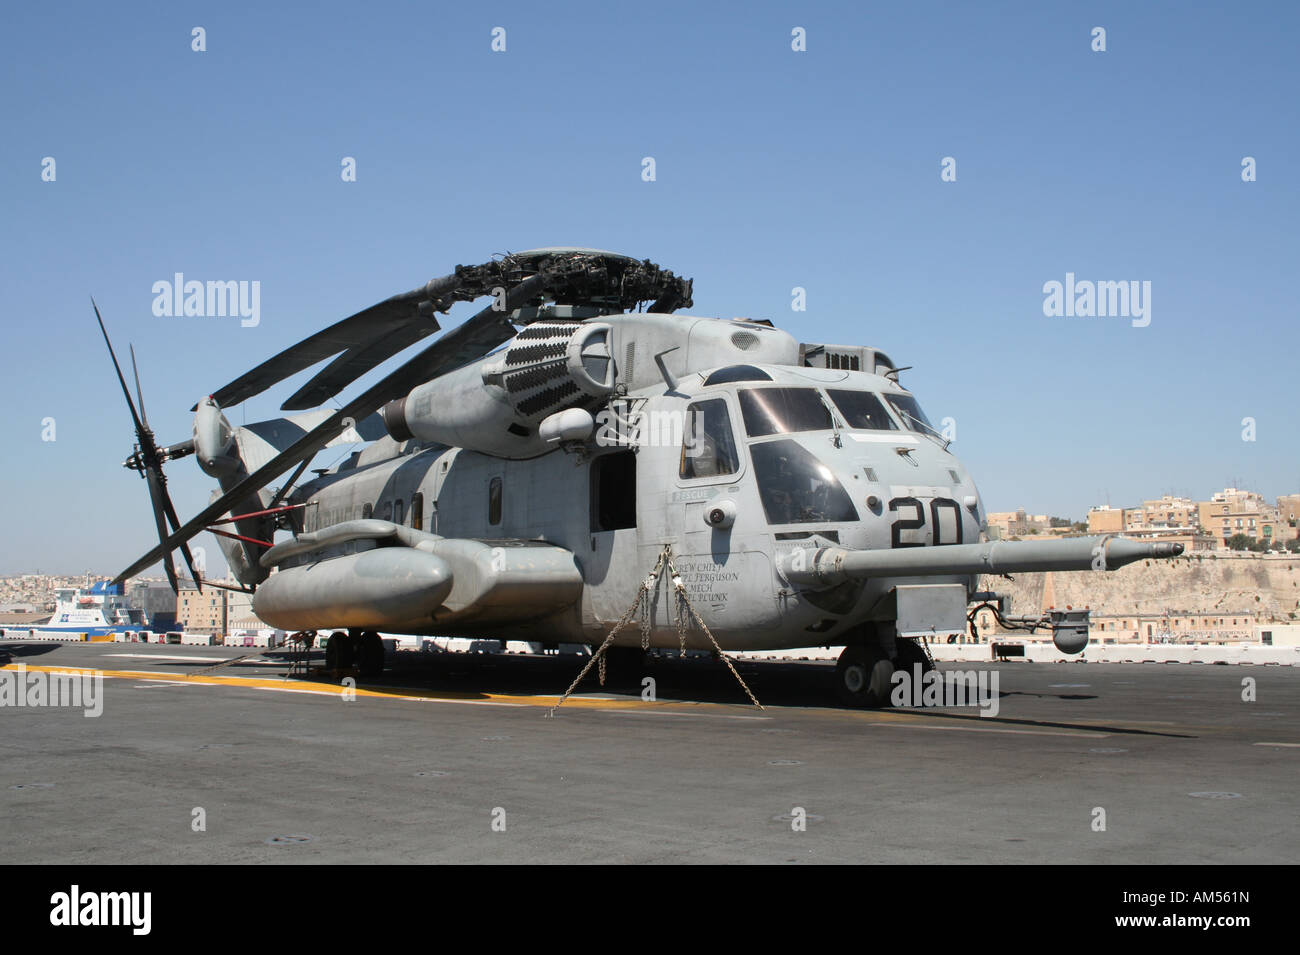 Un Sikorsky CH-53E Super Stallion helicopter exploité par la Marine américaine à bord du navire d'assaut amphibie USS Kearsarge Banque D'Images